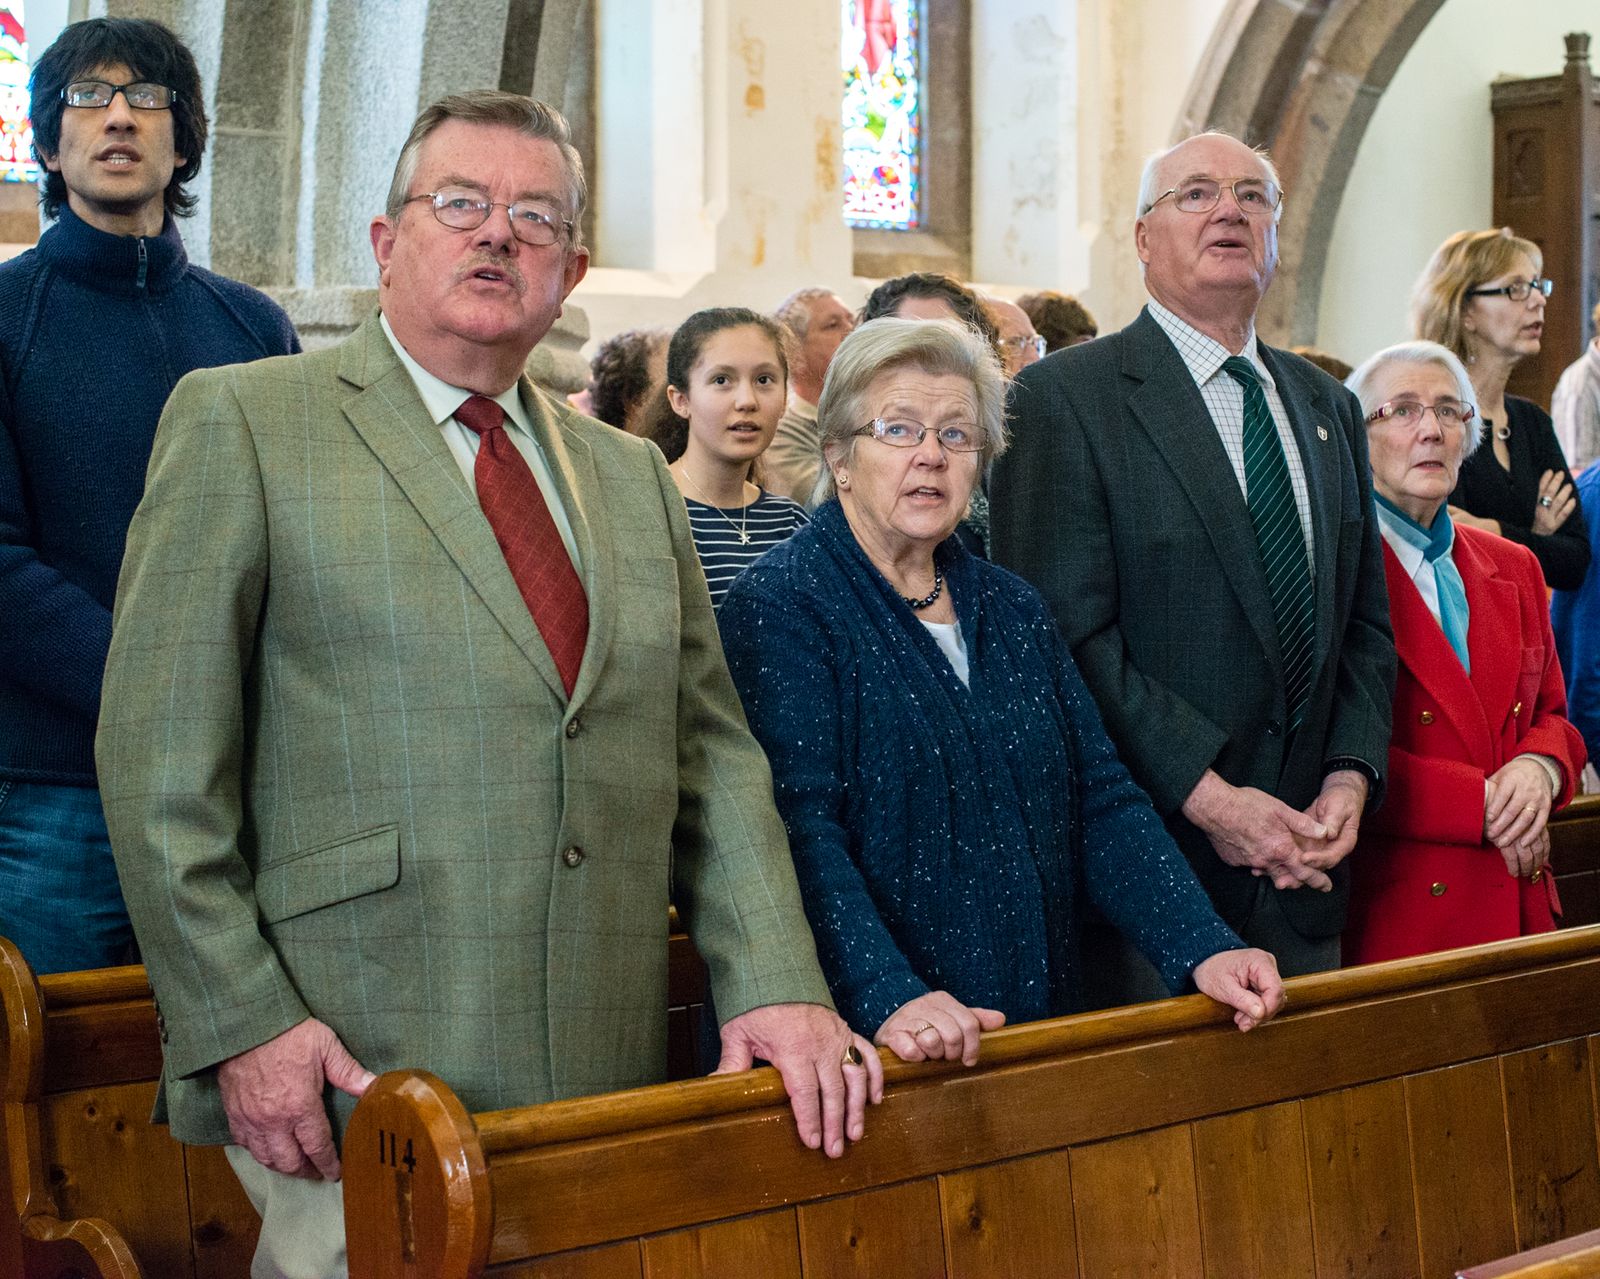 © Martin Toft - Worship, St Ouens Church, St Ouen, Jersey, Channel Islands, 6 April 2014